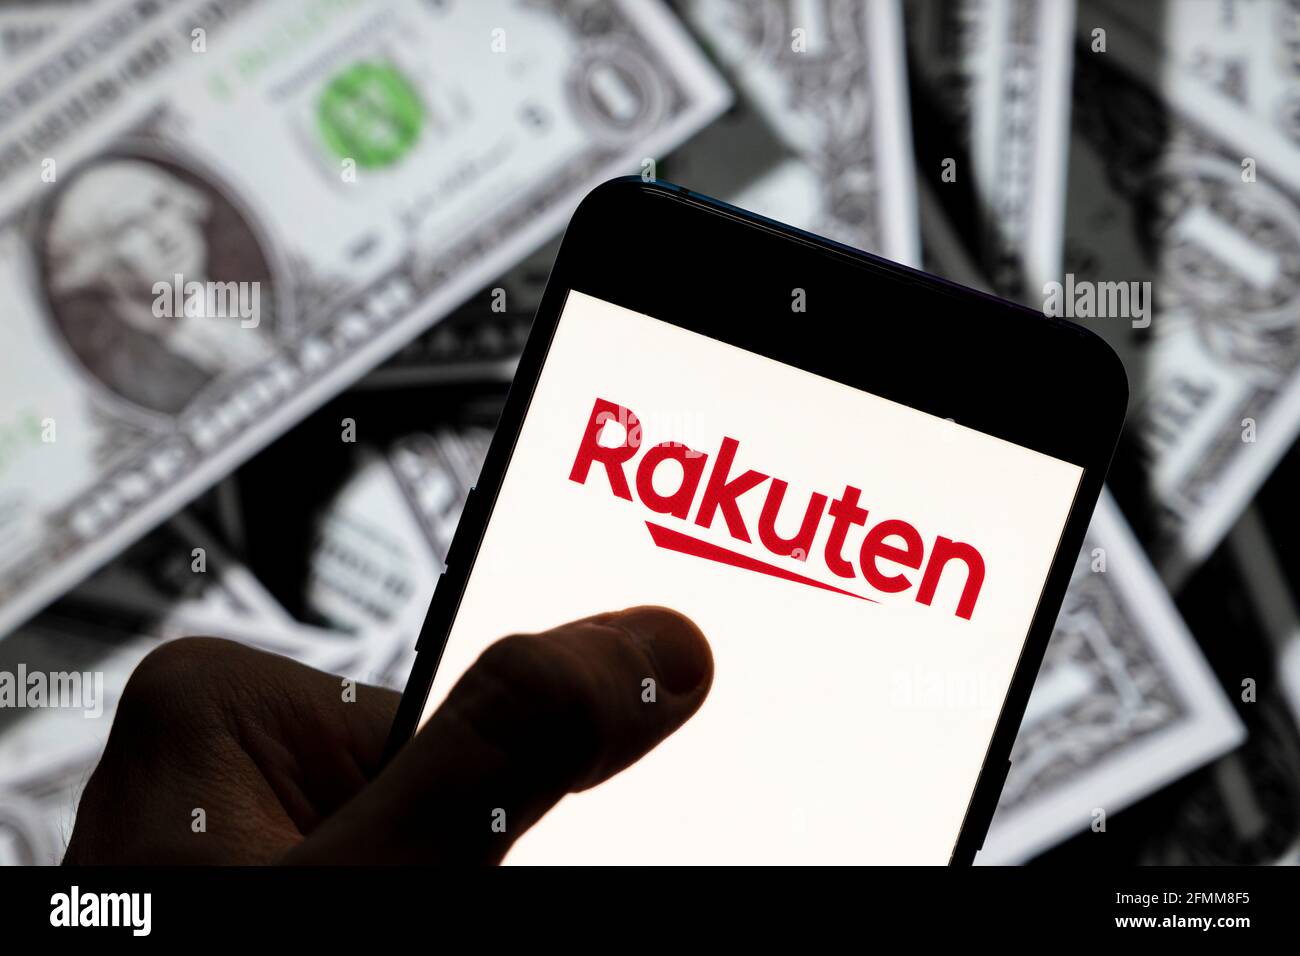 In questa illustrazione della foto il commercio elettronico giapponese e il logo della società di Internet Rakuten visto su uno smartphone con la valuta USD (dollaro degli Stati Uniti) in background. Foto Stock